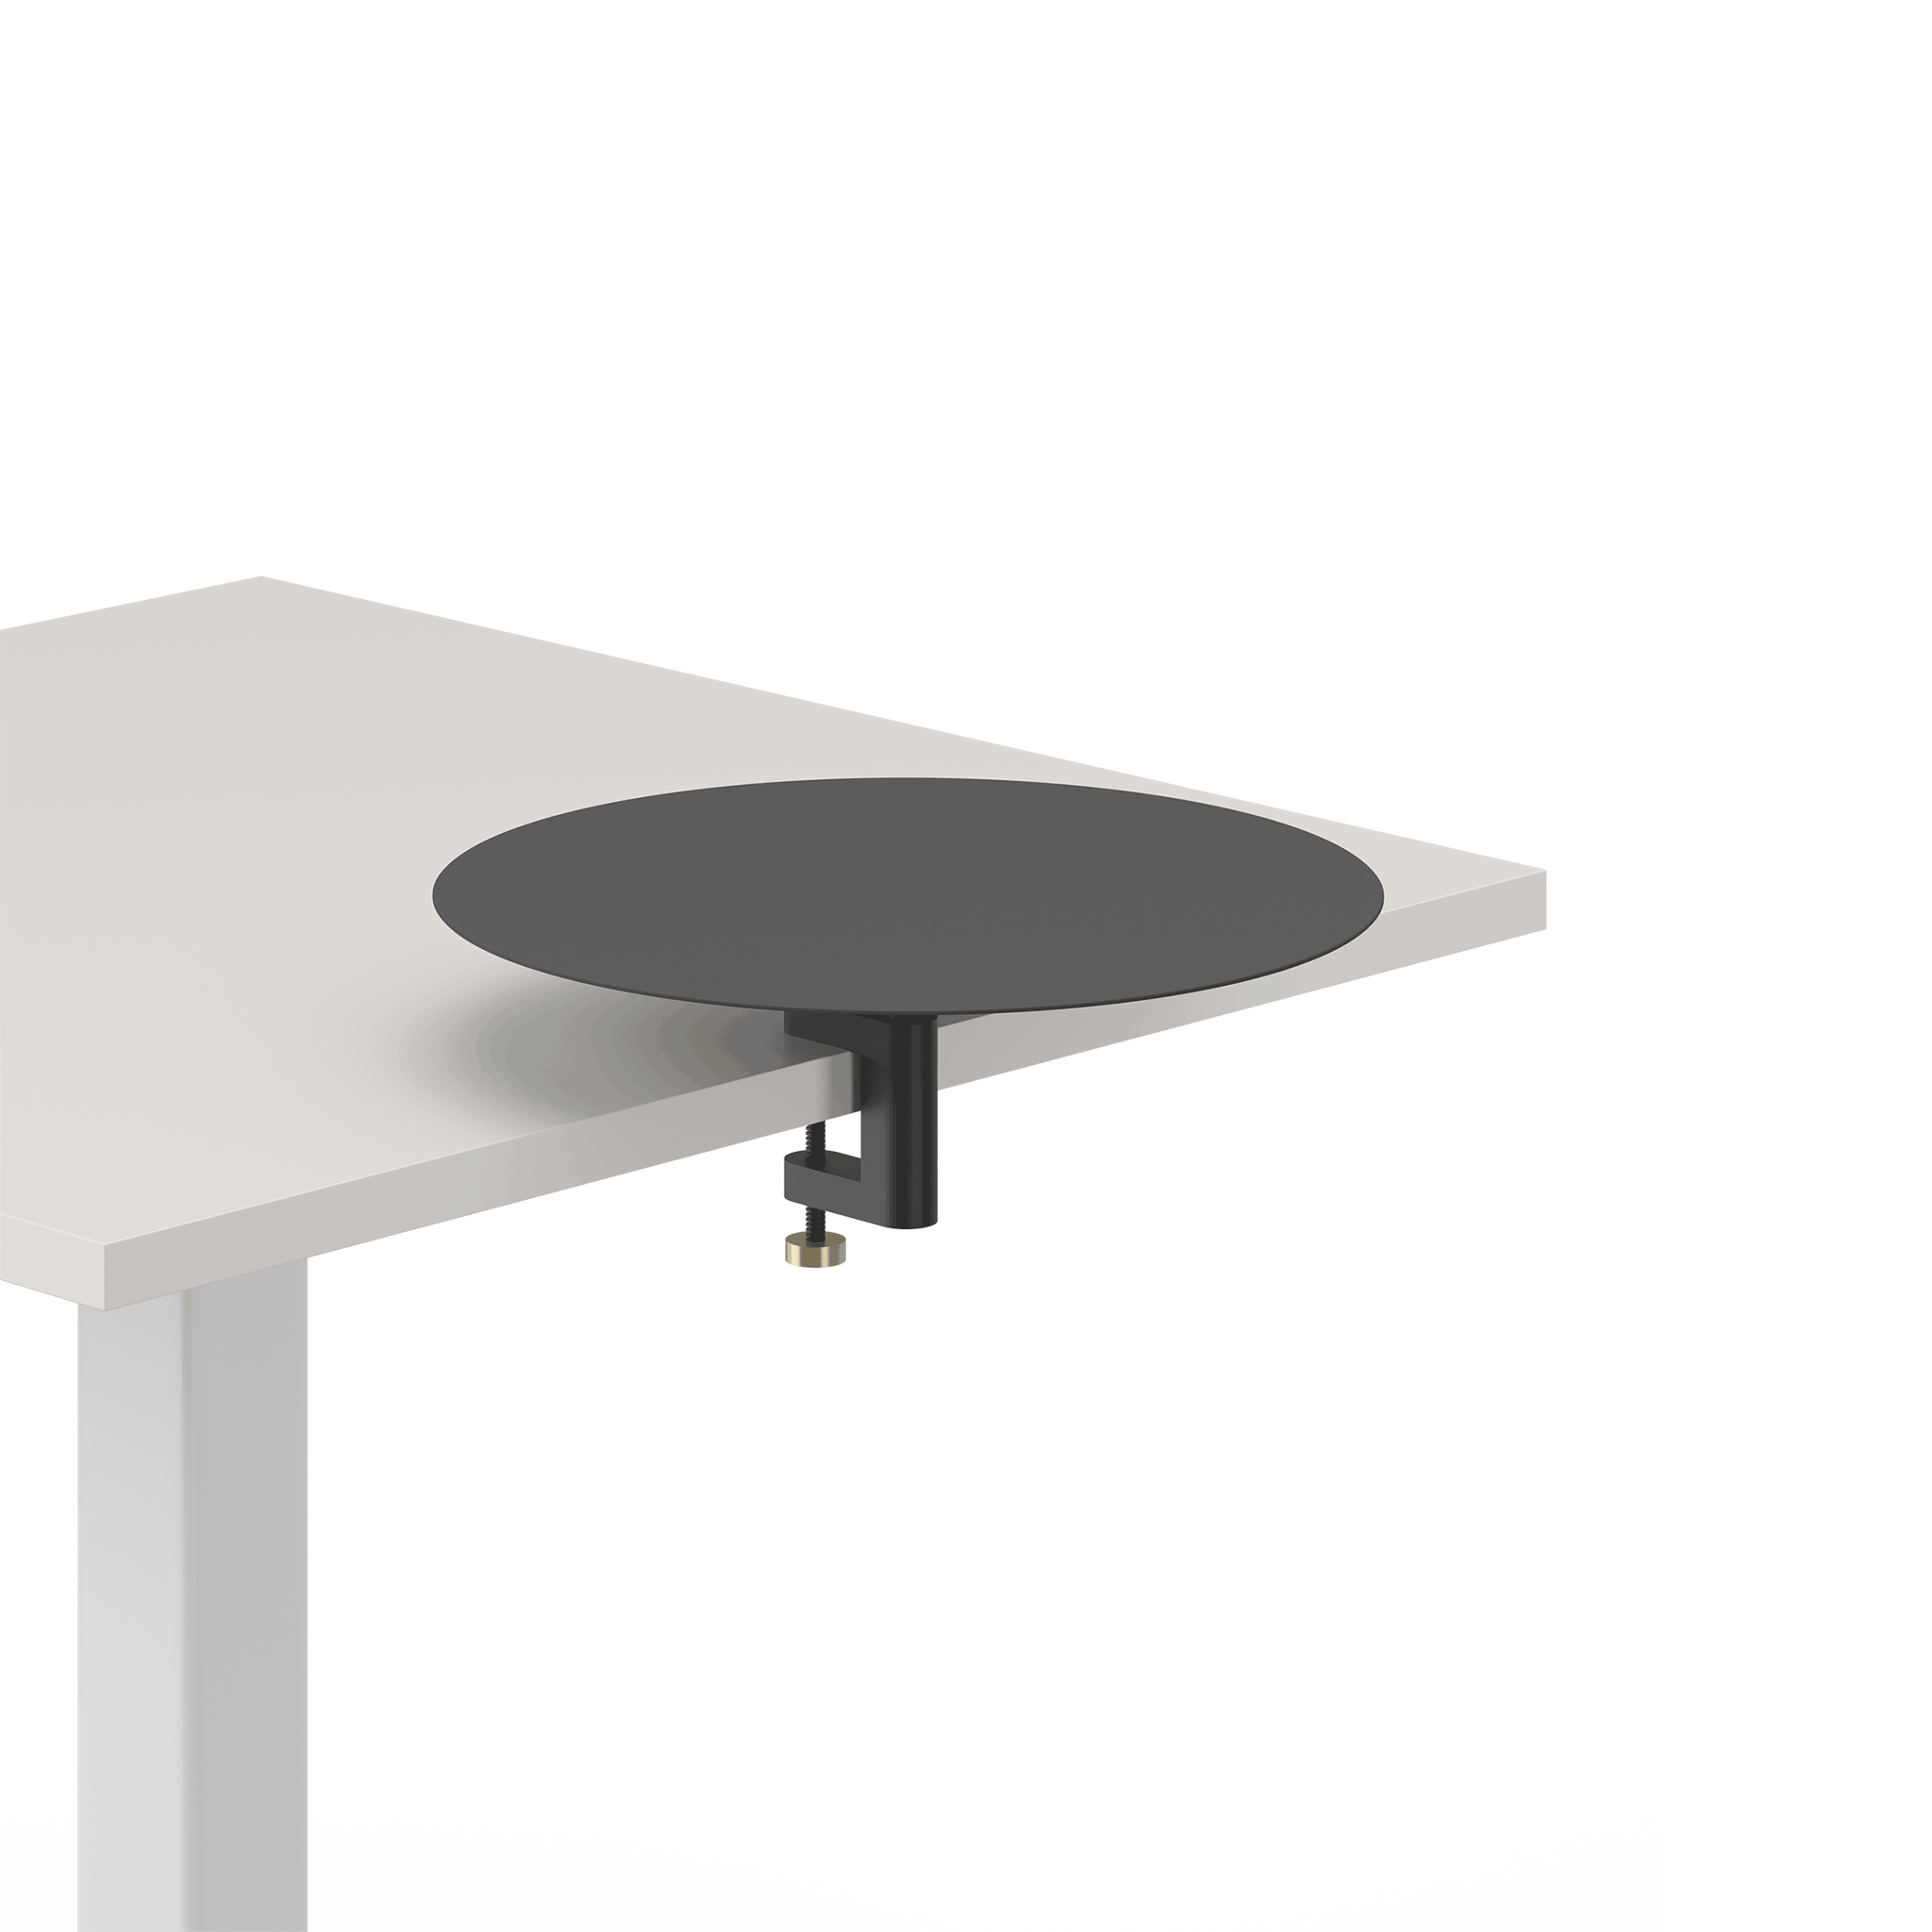 Von schräg-oben sieht man einen Ausschnitt eines cremefarbenen Tisches. Auf dessen rechter Seite ist eine Klemme in schwarzem Metall angebracht, auf der eine runde Metallfläche, die dünn und schwarz ist, fixiert ist. Das Anbauteil aus Metall befindet sich etwas erhöht von der Tischfläche.